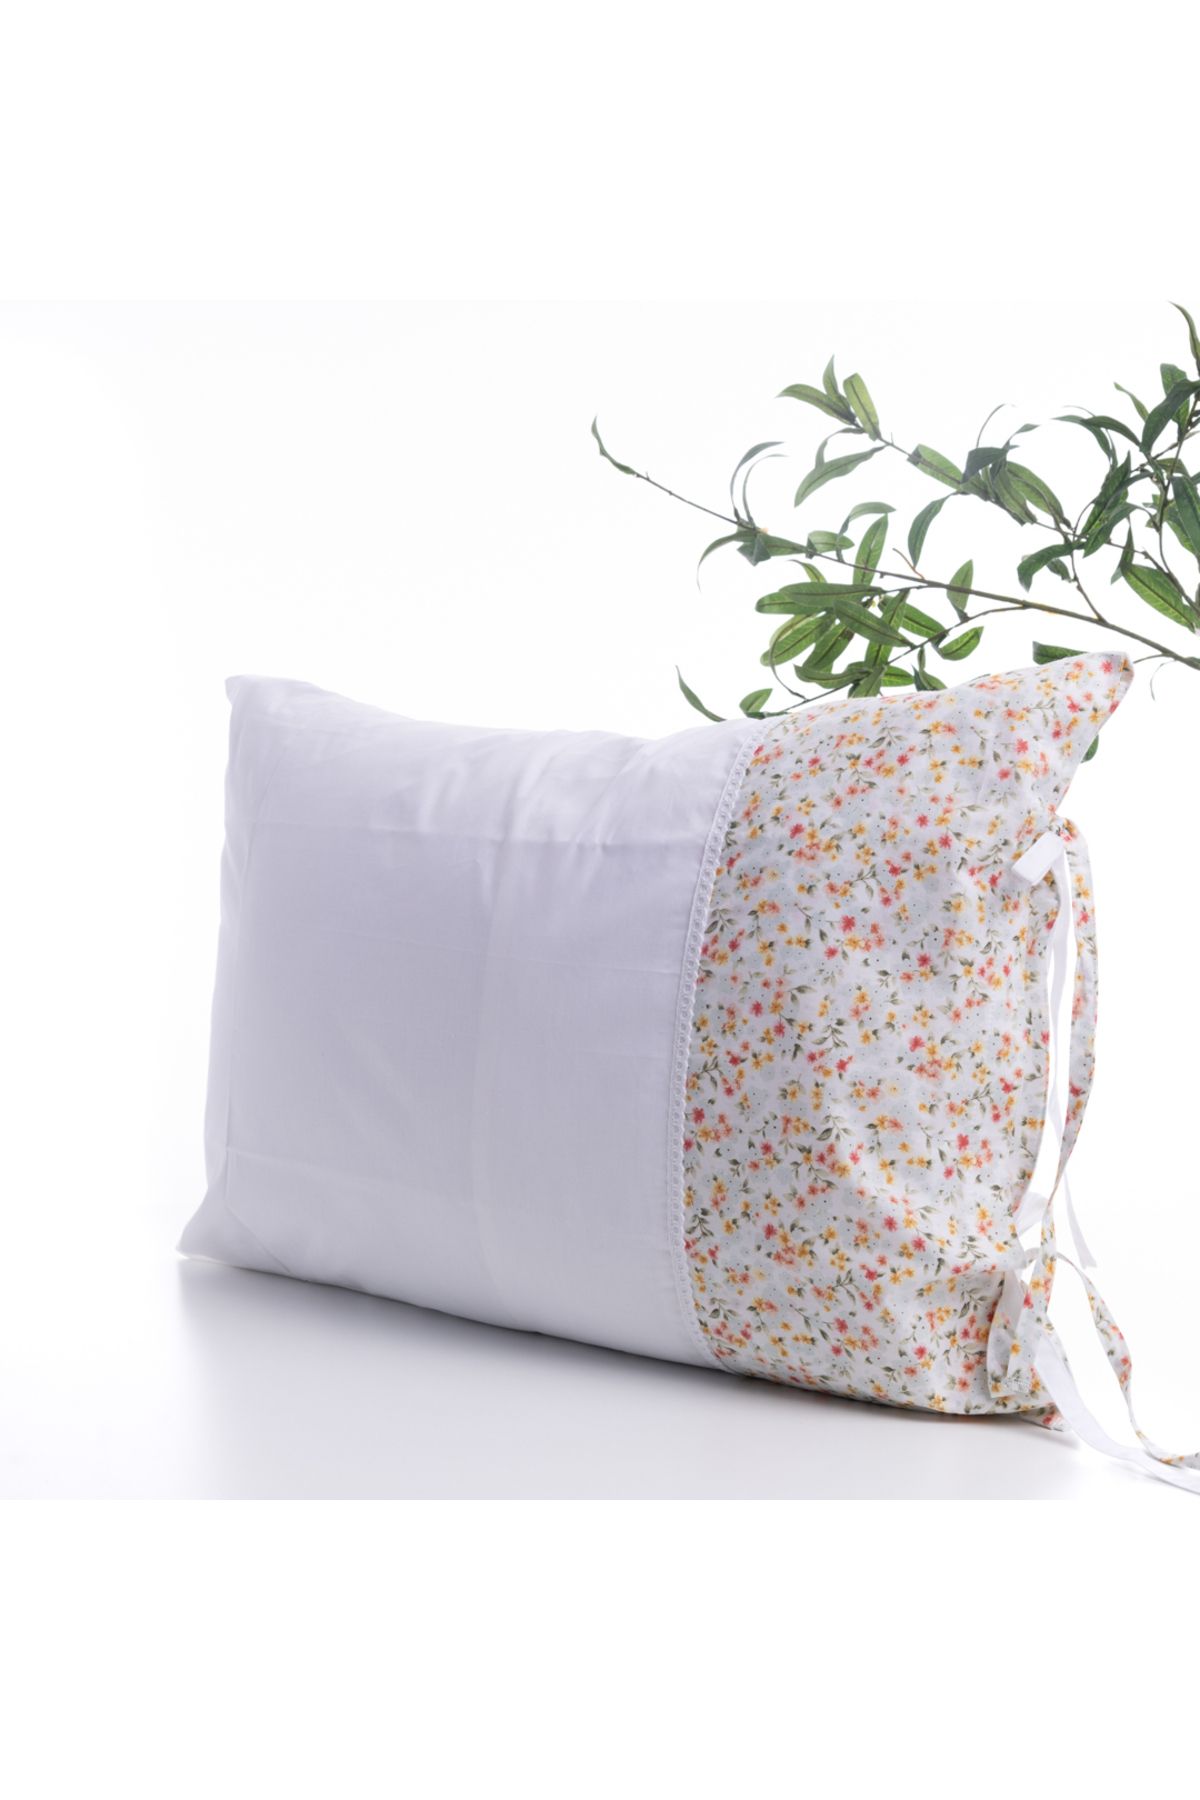 Bimotif Çiçek desenli yastık kılıfı, 50x70 cm, Su Yeşili